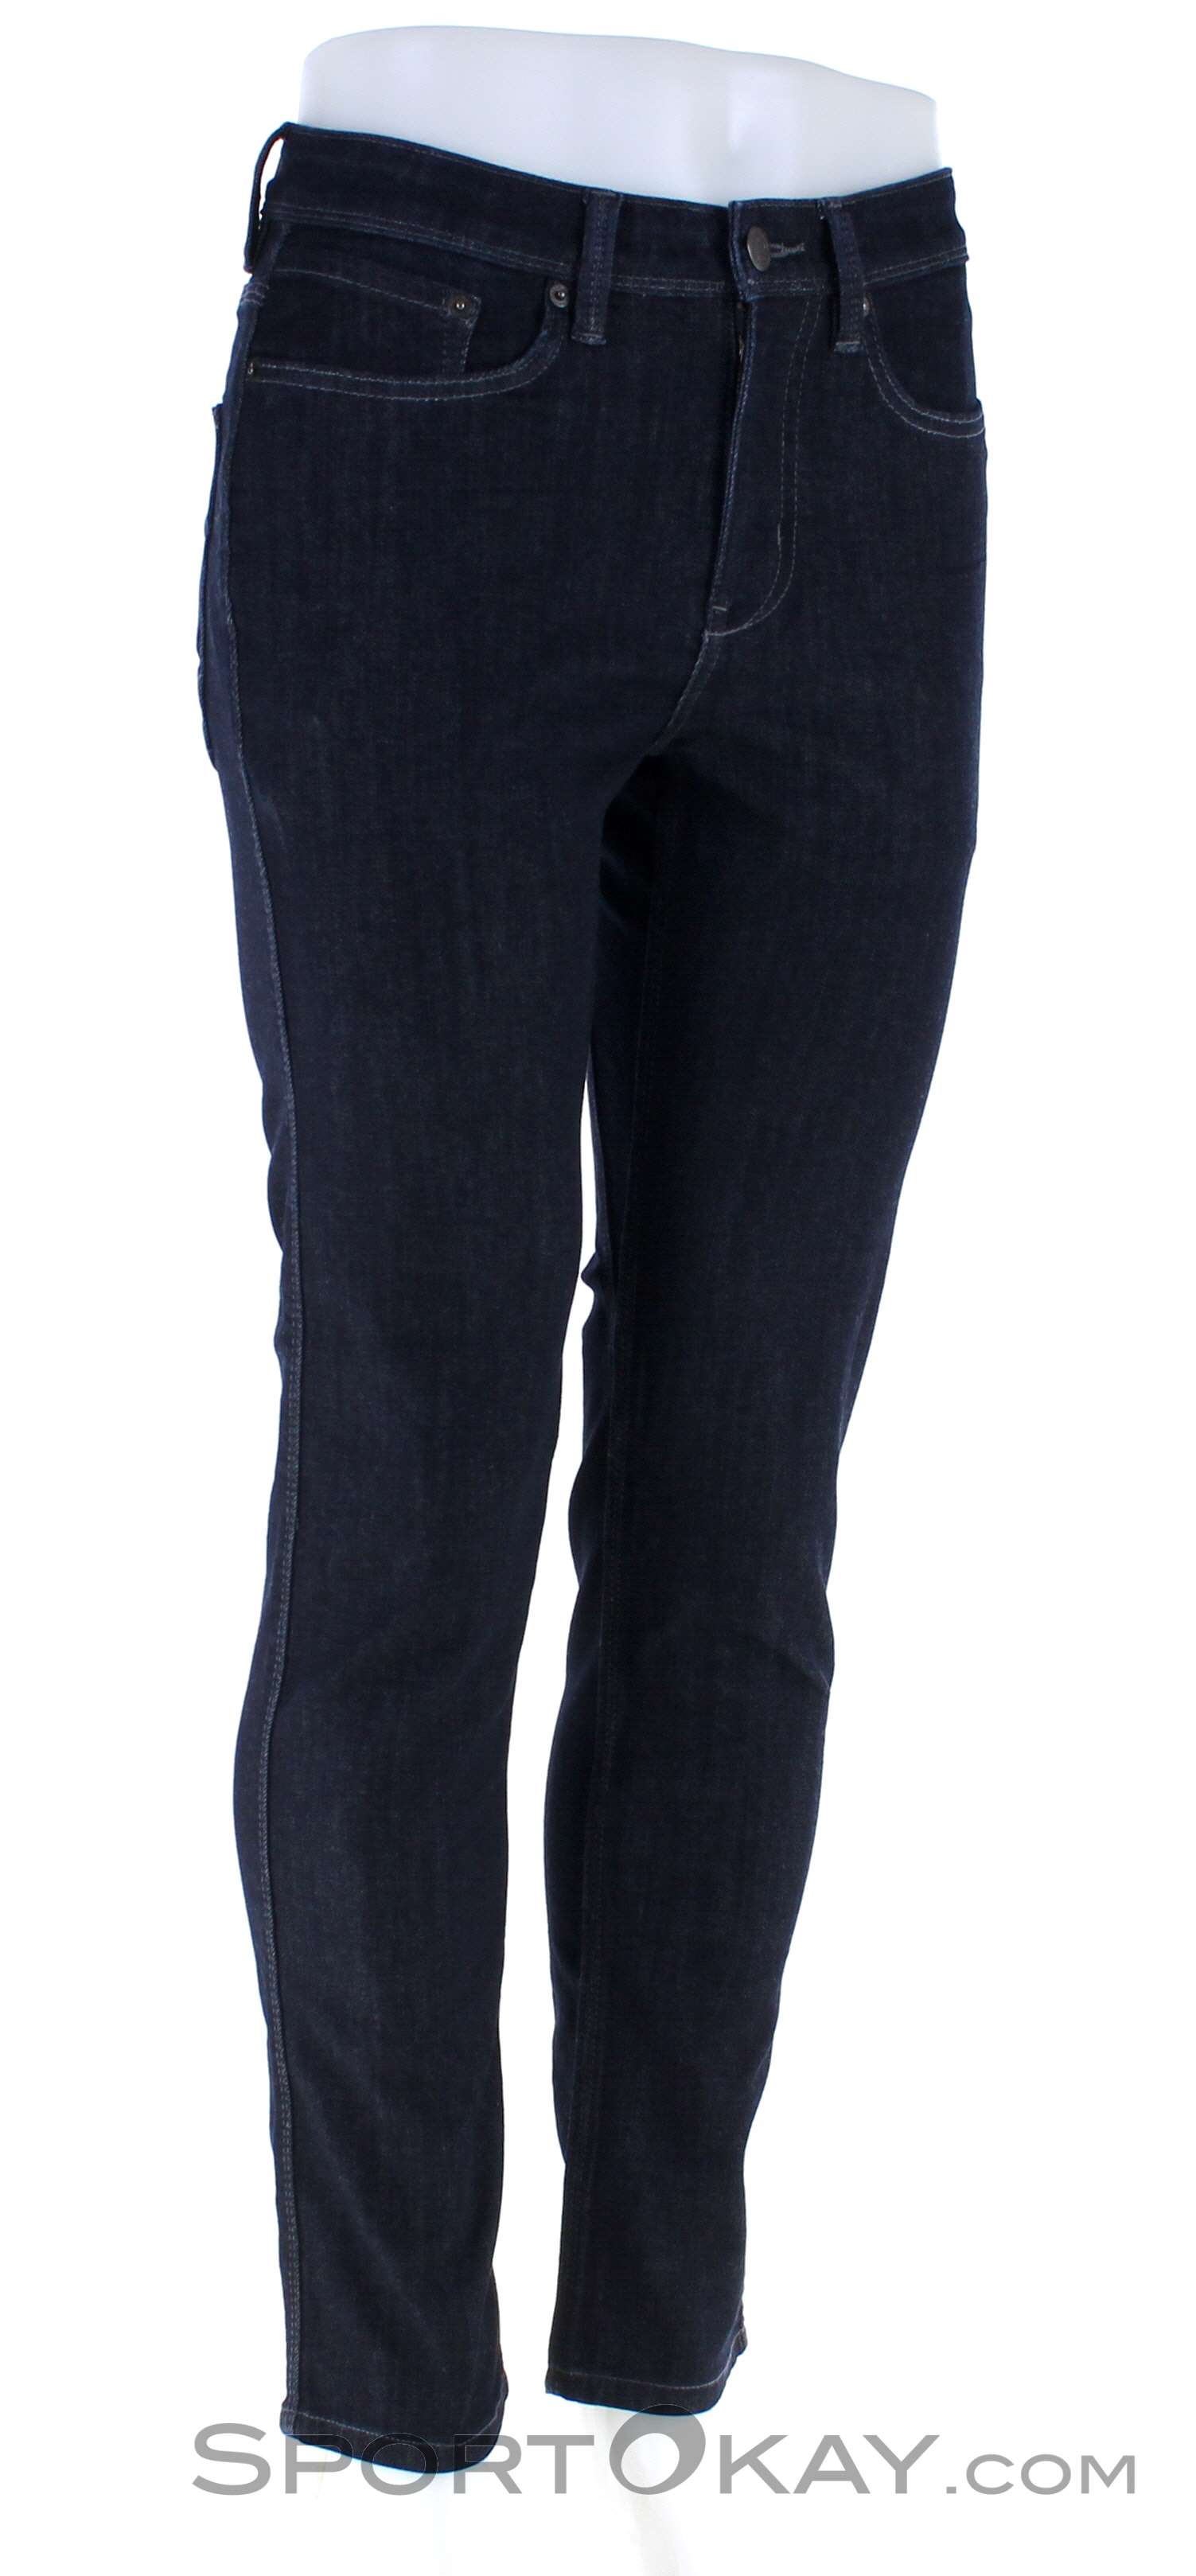 FOX JEANS Men's Allen Standard Fit Blue Denim Mens Jeans Shorts SIZE 44